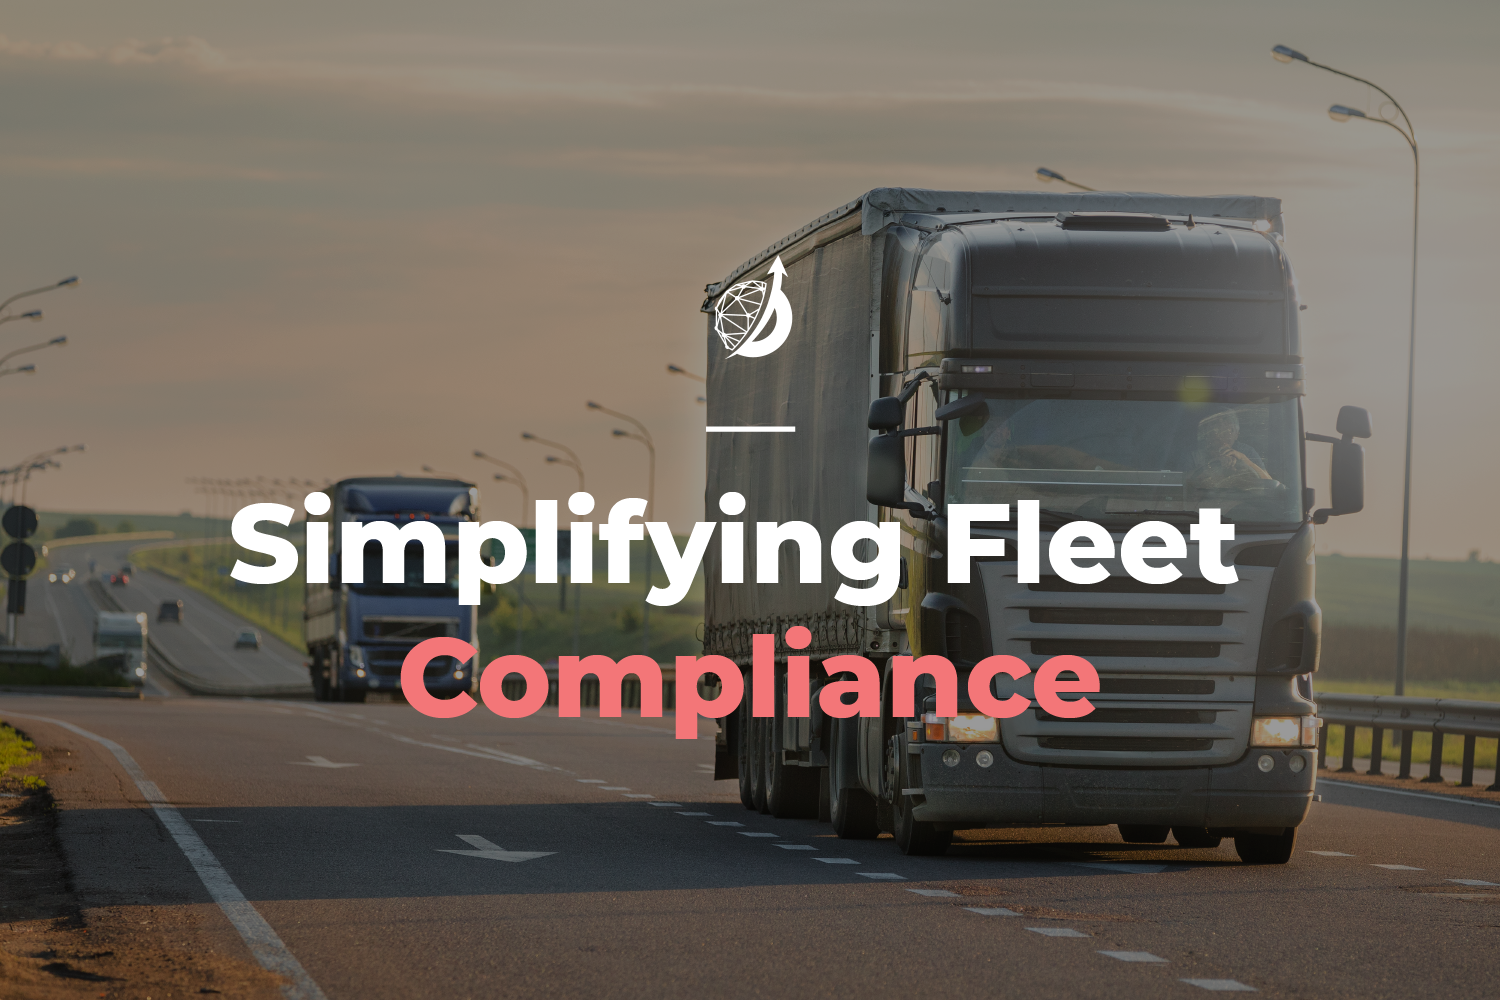 Fleet compliance solutions